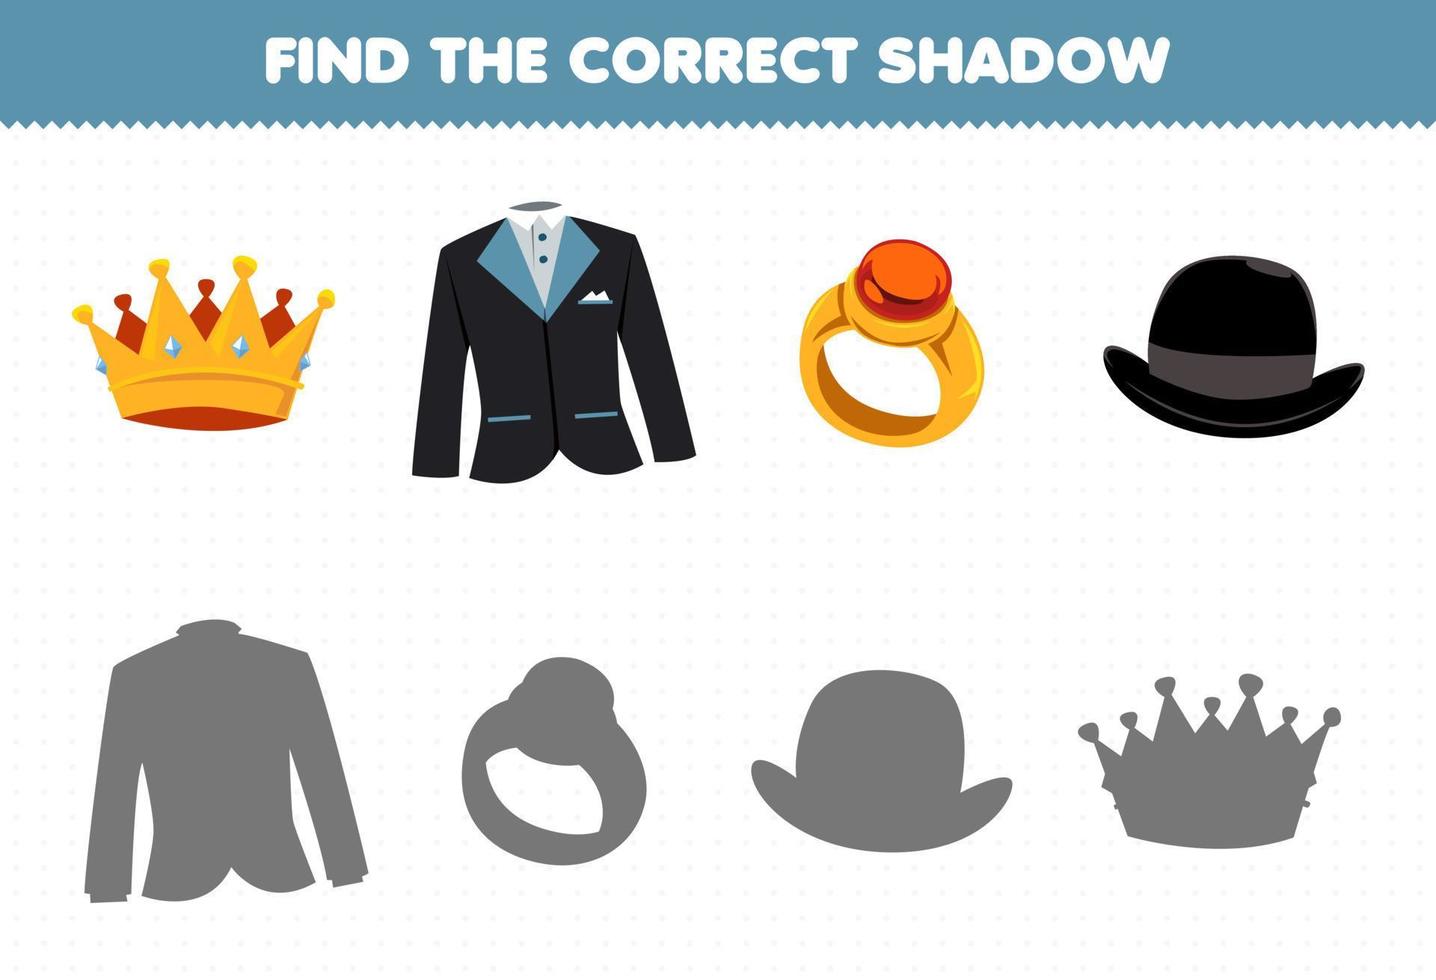 juego educativo para niños encontrar la sombra correcta conjunto de ropa ponible de dibujos animados corona traje de esmoquin sombrero de anillo vector